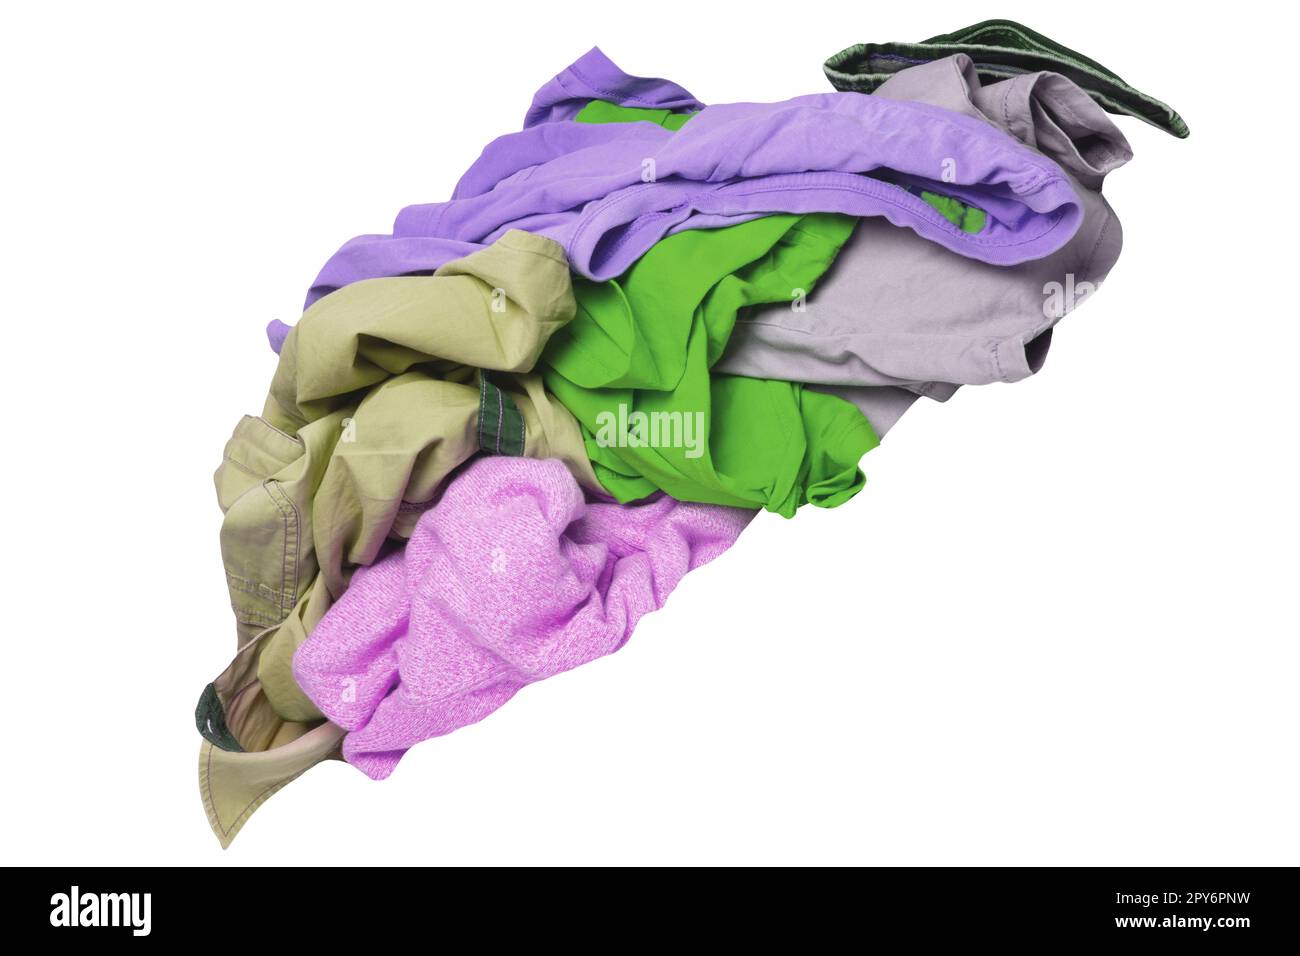 pila de ropa sucia en la cesta de lavado, cesta de ropa colorida limpia  Fotografía de stock - Alamy